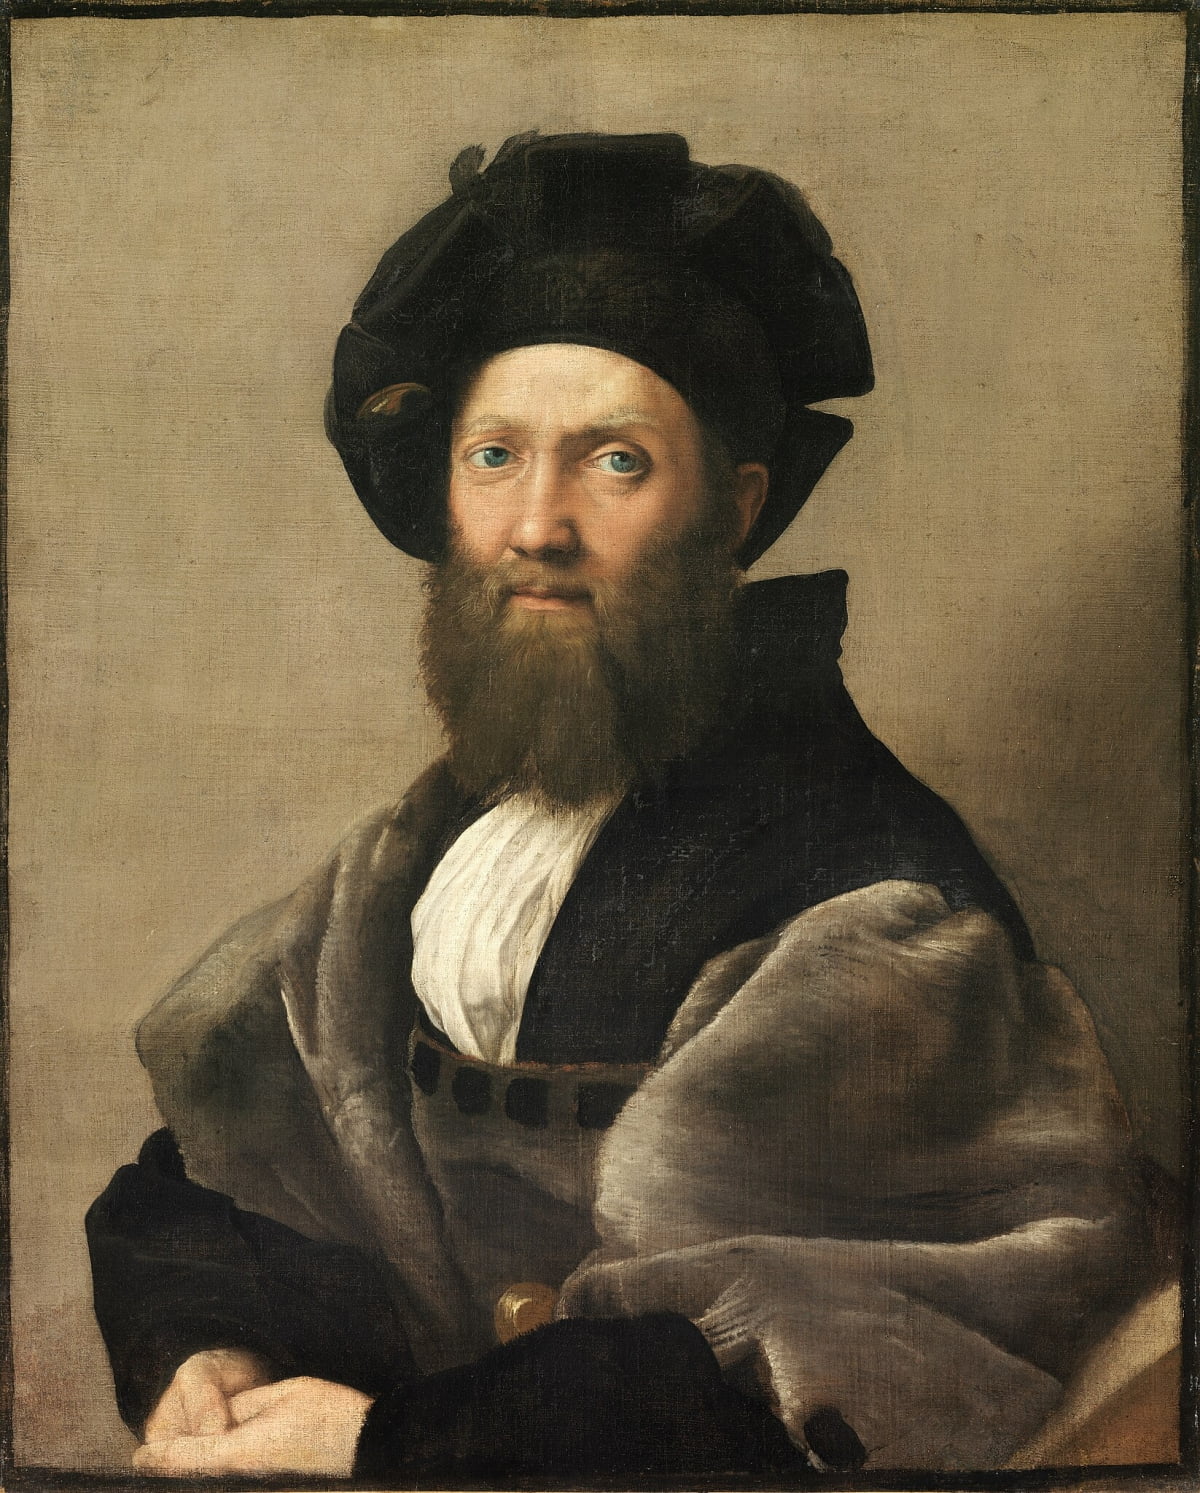 라파엘로의 '발다사레 카스틸리오네 백작'(1514~1515년경). 그가 남긴 최고의 초상화 중 하나다. 특유의 우아한 표현과 색채로 솔직하고 온화하면서도 현명하고 성실한 귀족 친구의 내면을 잘 표현해냈다. /루브르박물관